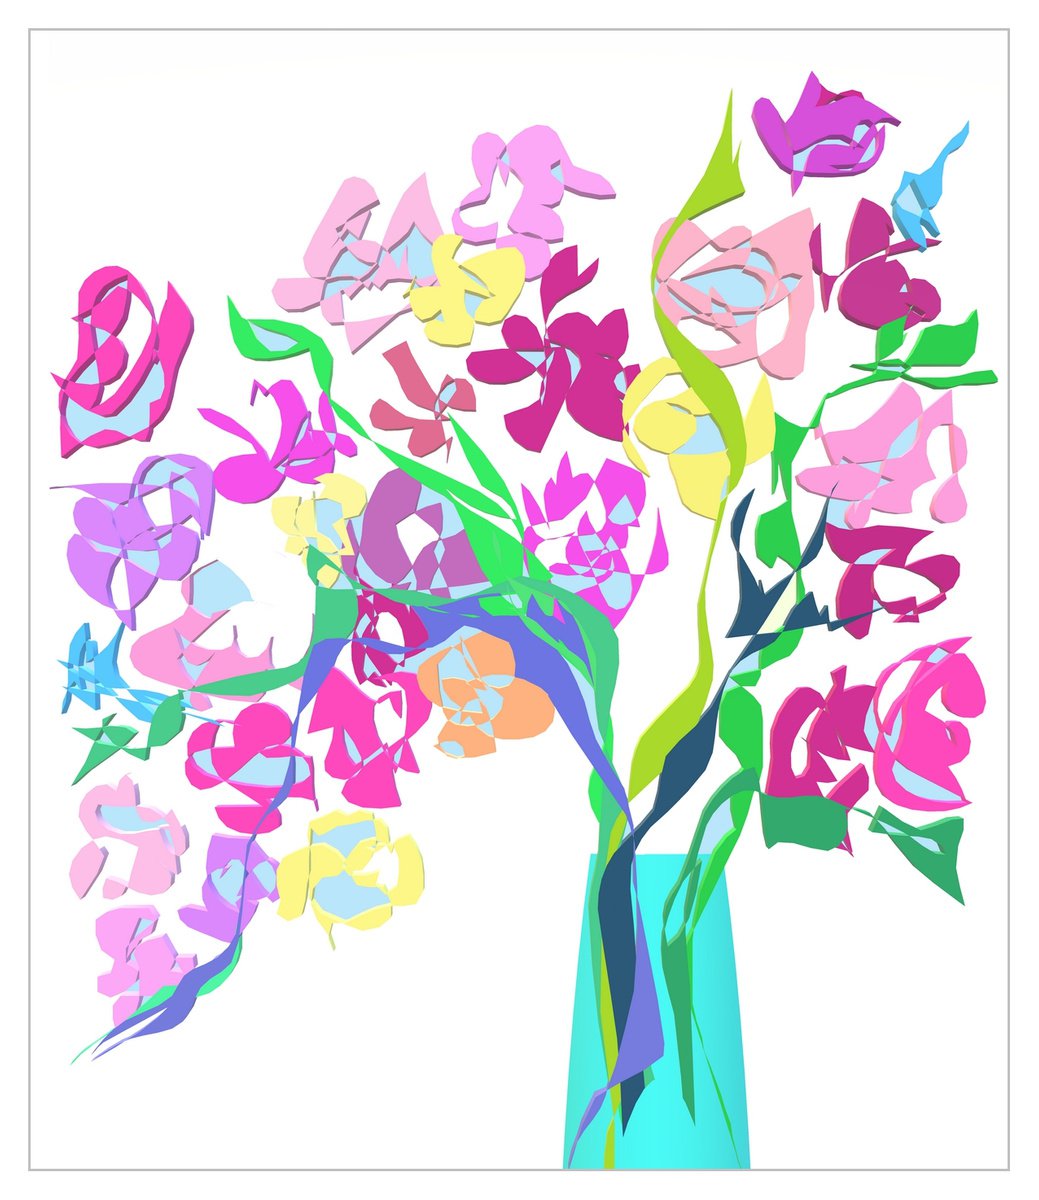 Bright Flowers in vase by Kseniya Kovalenko